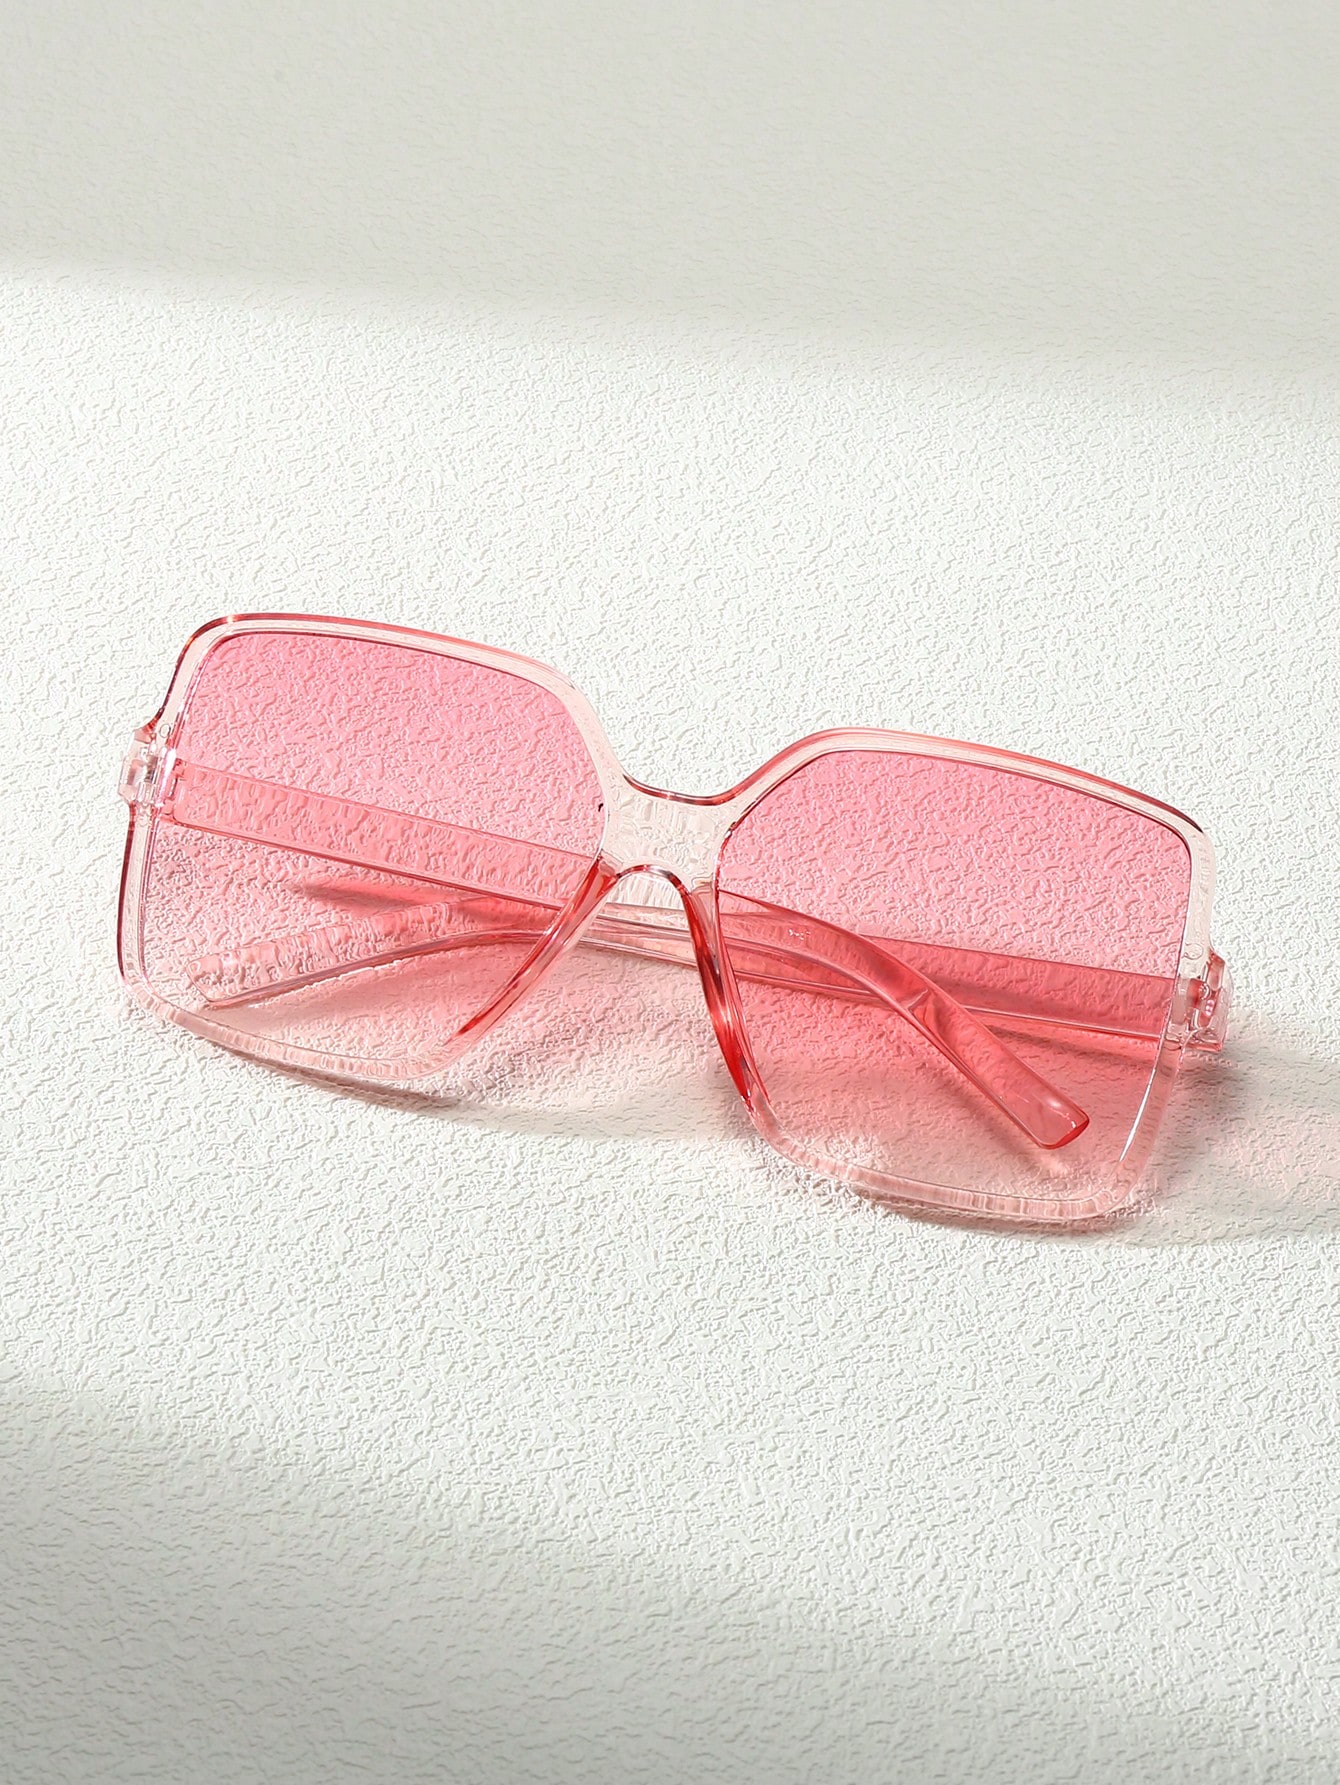 1 шт. модные унисекс очки в большой оправе в стиле Y2K подходящие для фотографий и вождения